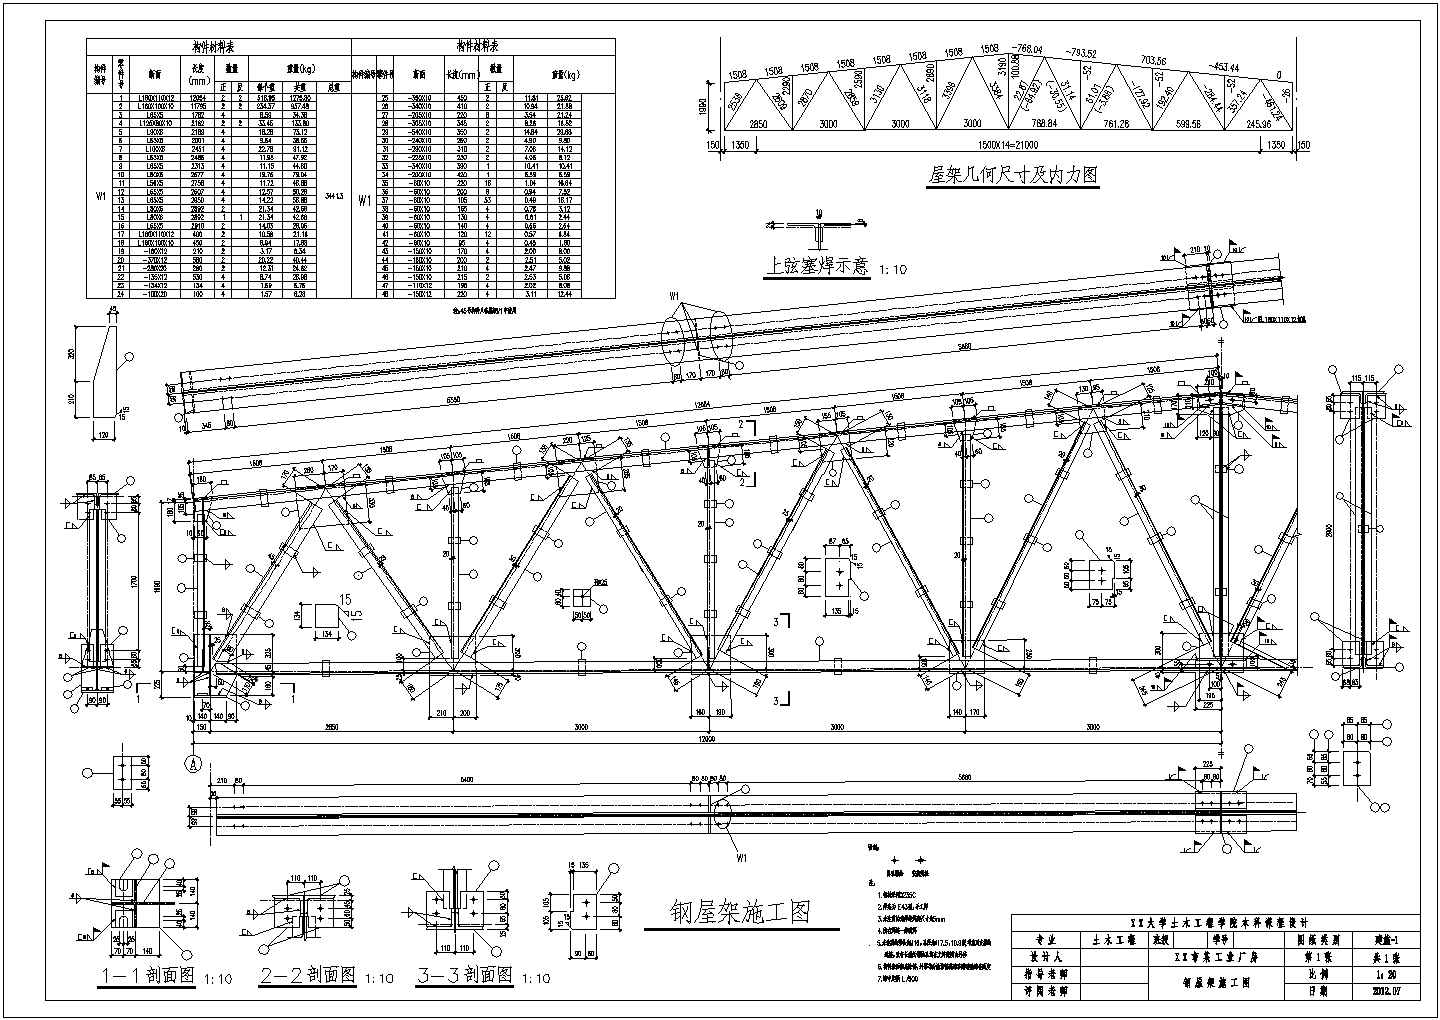 【桁架】24m梯形钢屋架施工图